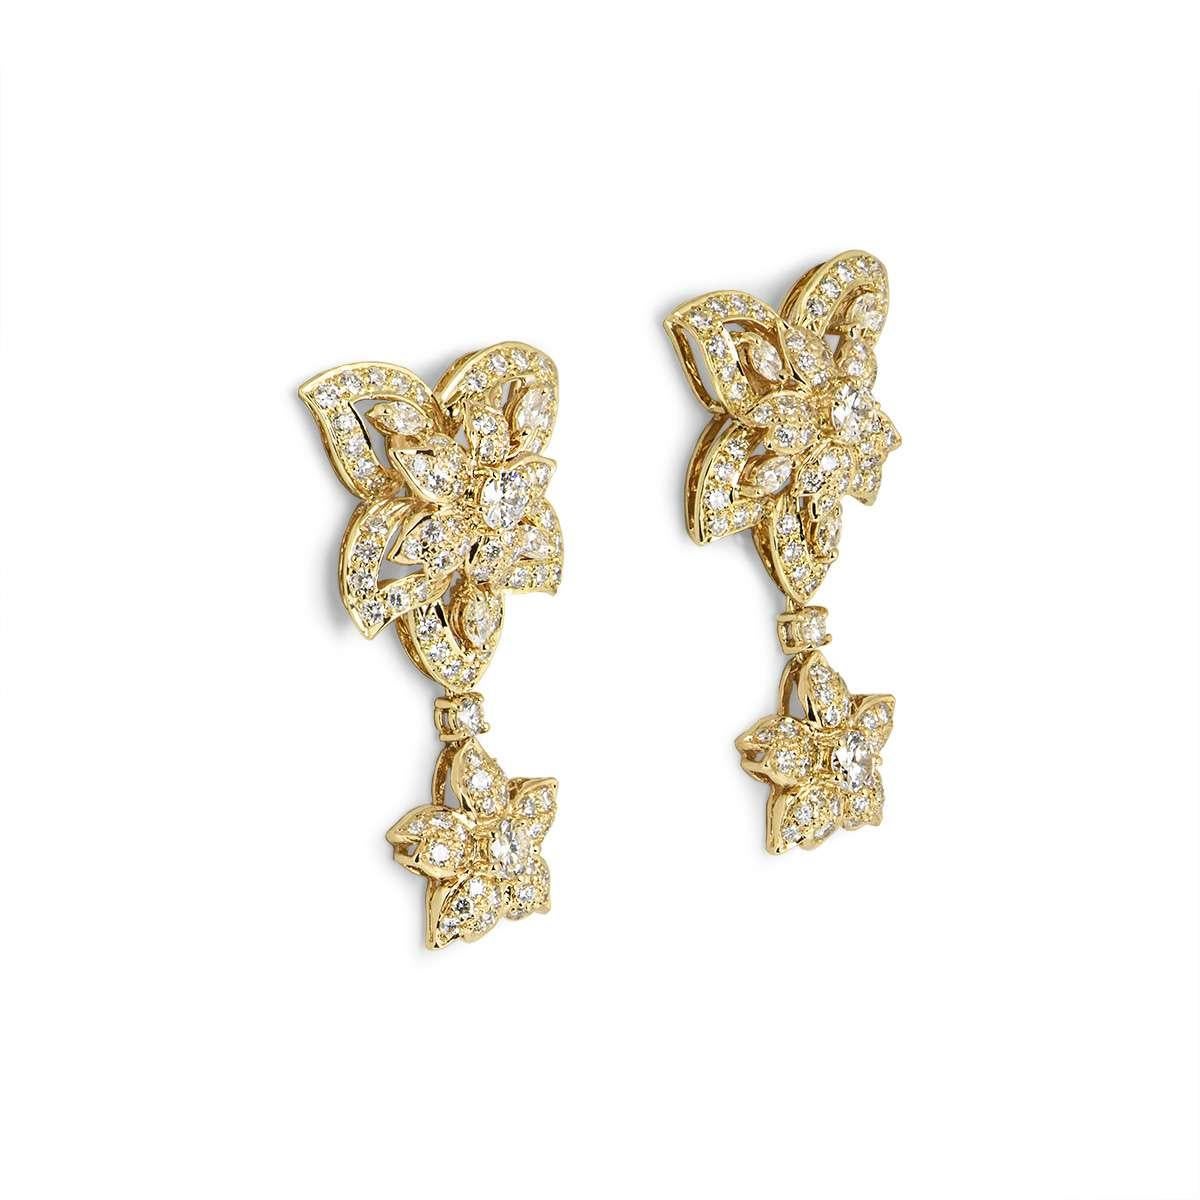 Ein Paar diamantbesetzte Blumenohrringe aus 18 Karat Gelbgold. Die Ohrringe bestehen aus einer großen durchbrochenen Blume, an der ein kleineres Blumenmotiv hängt. Die Ohrringe sind mit runden Diamanten im Brillant- und Marquise-Schliff mit einem